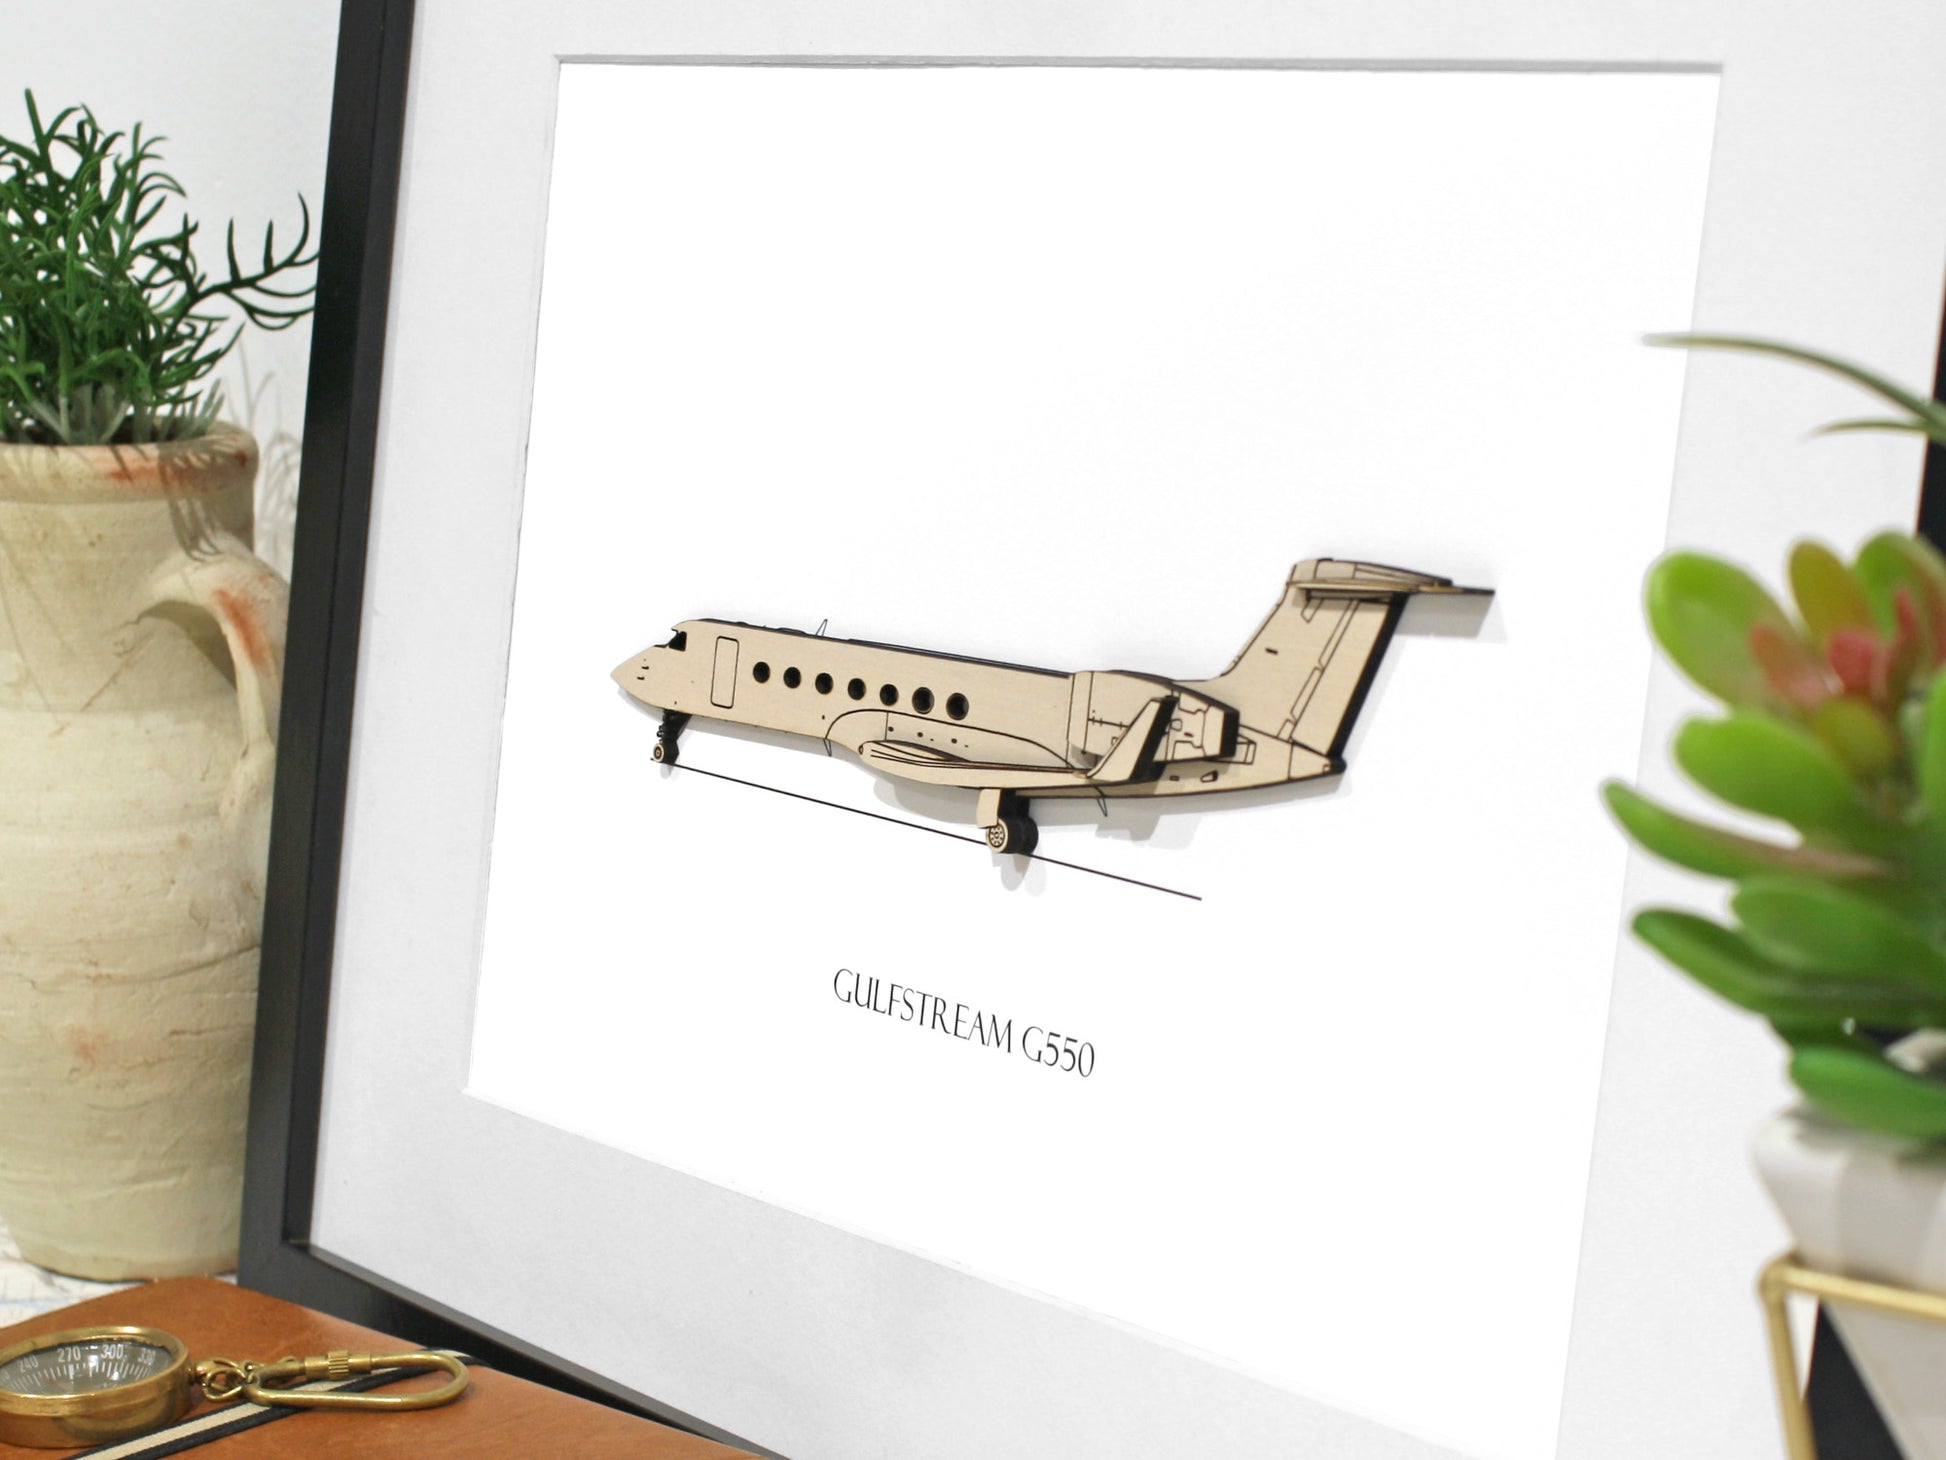 Gulfstream G550 aircraft blueprint art